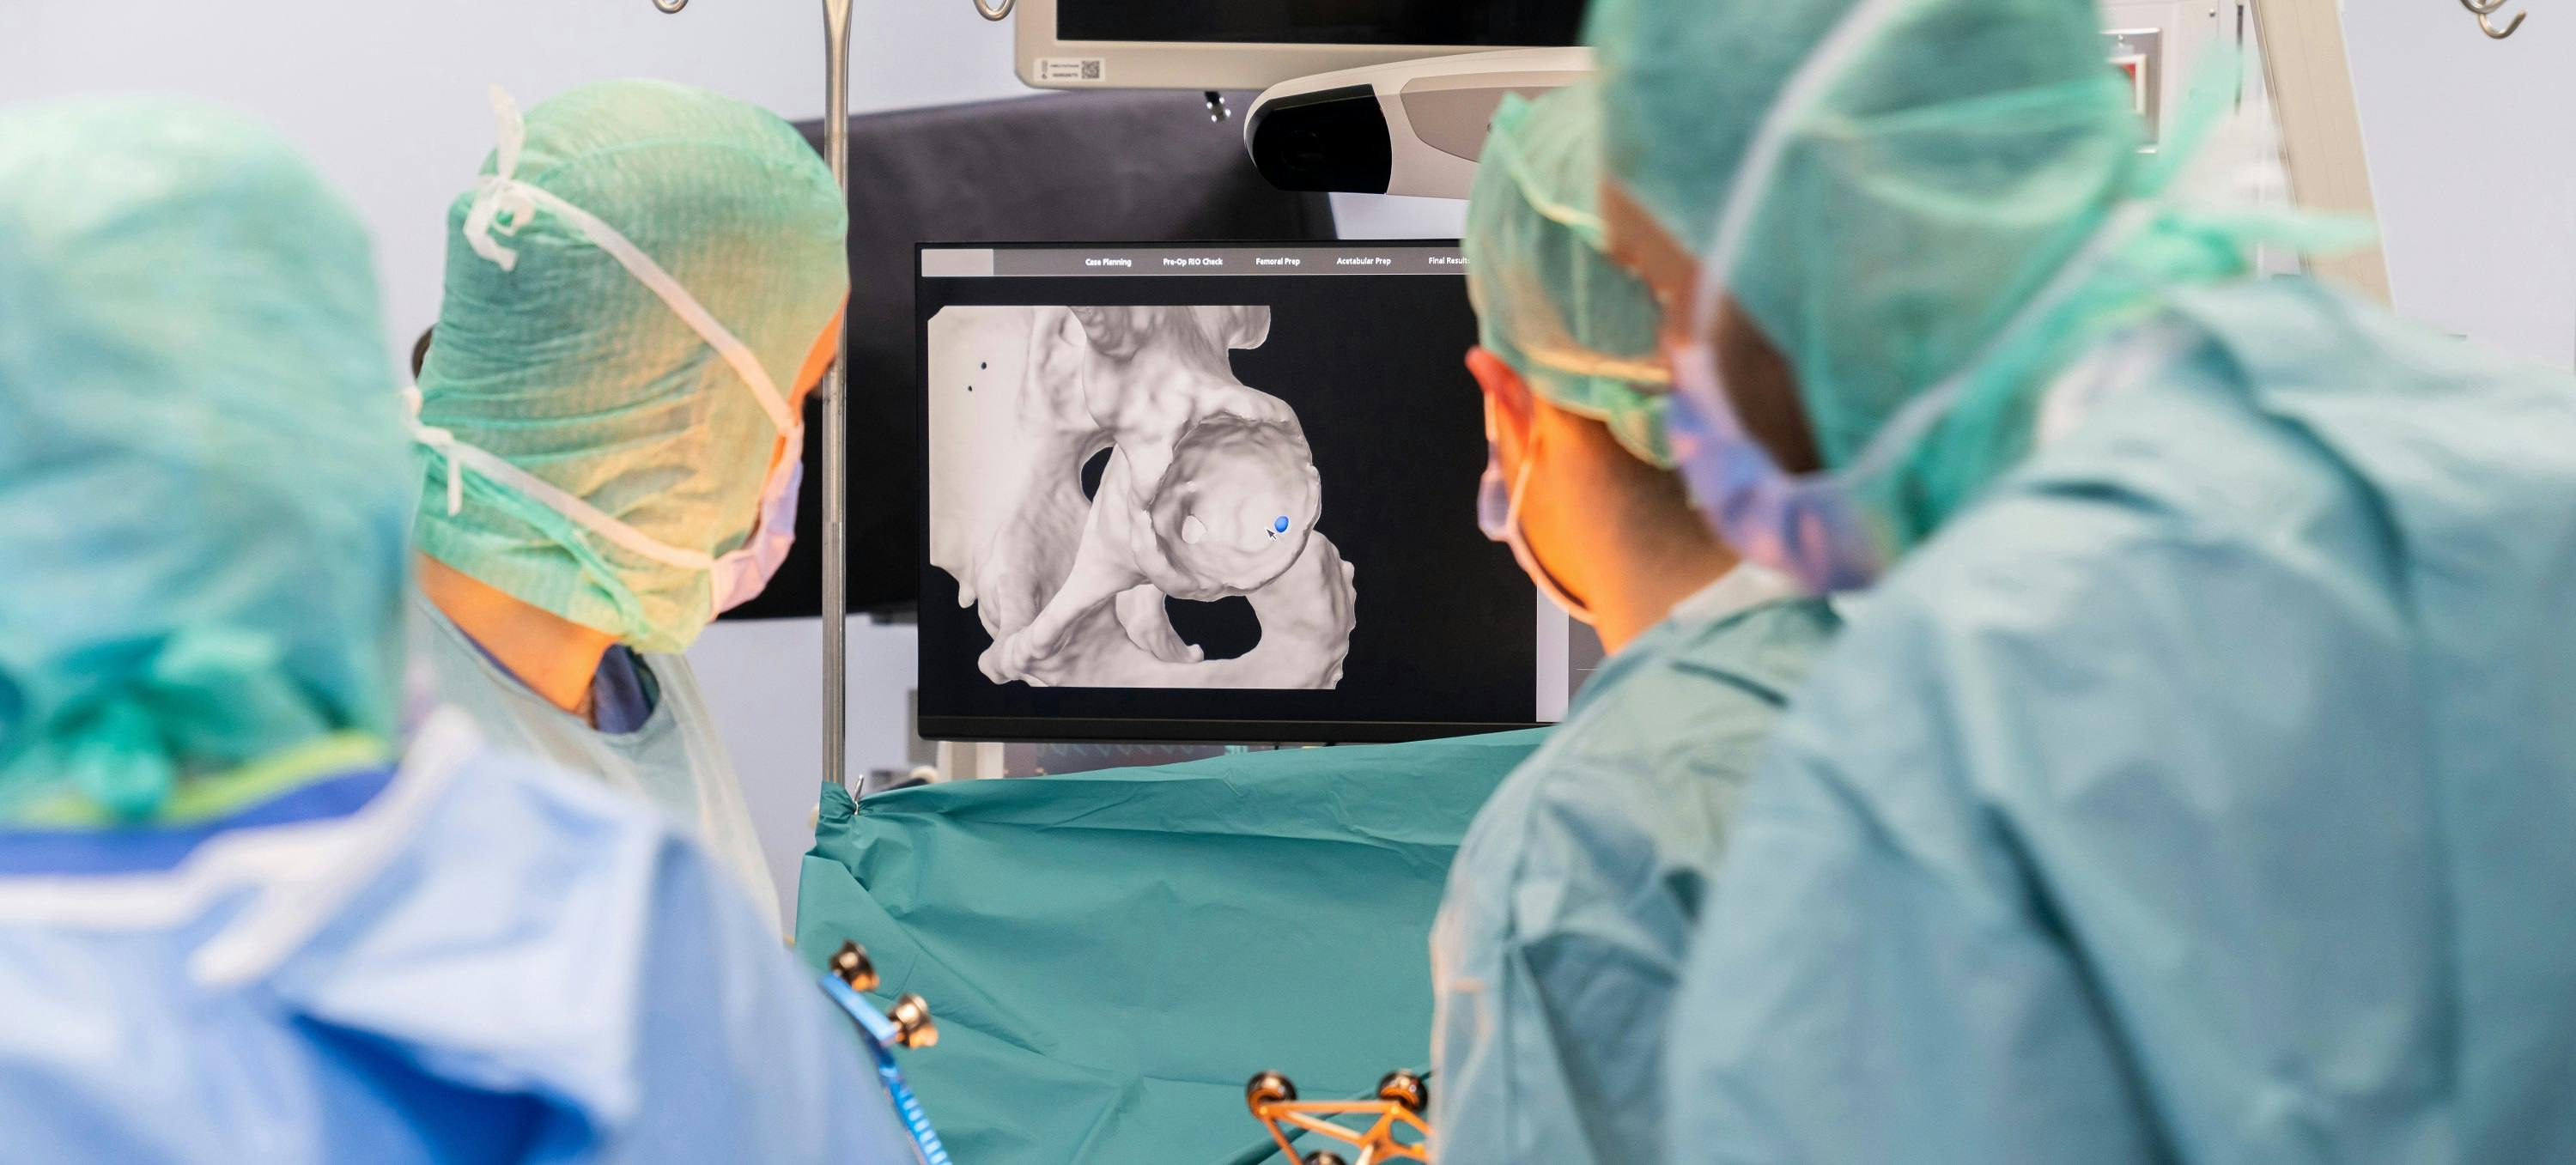 Ärzte betrachten eine medizinische 3D-Bildgebung während einer Operation.